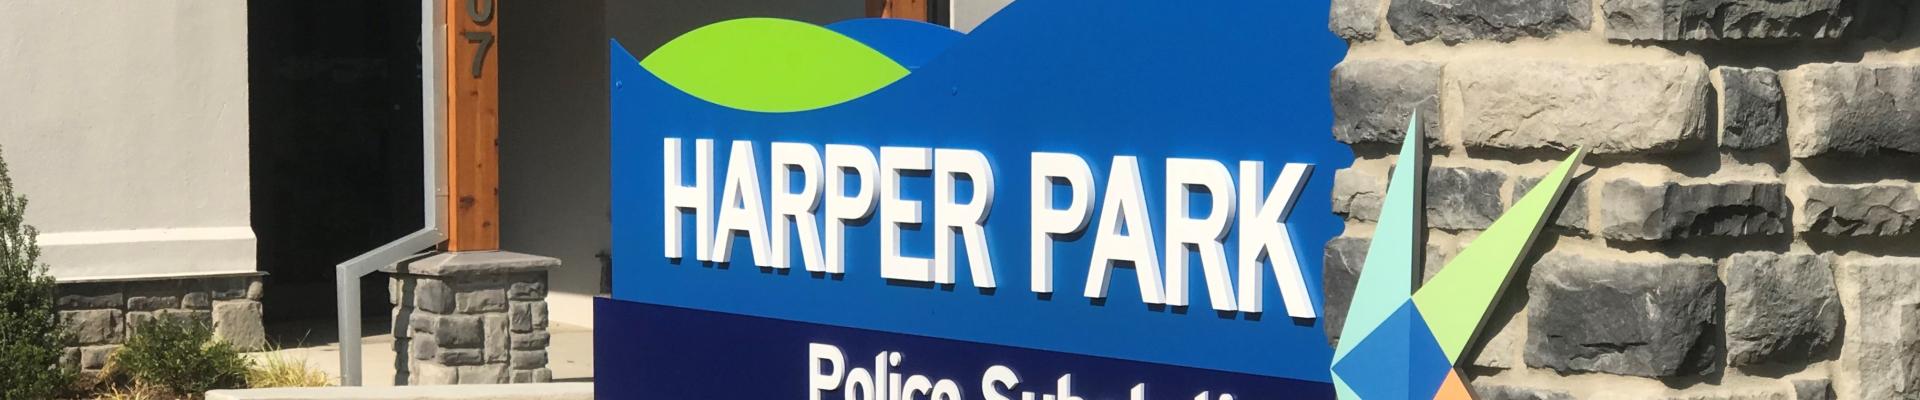 Harper Park Signage